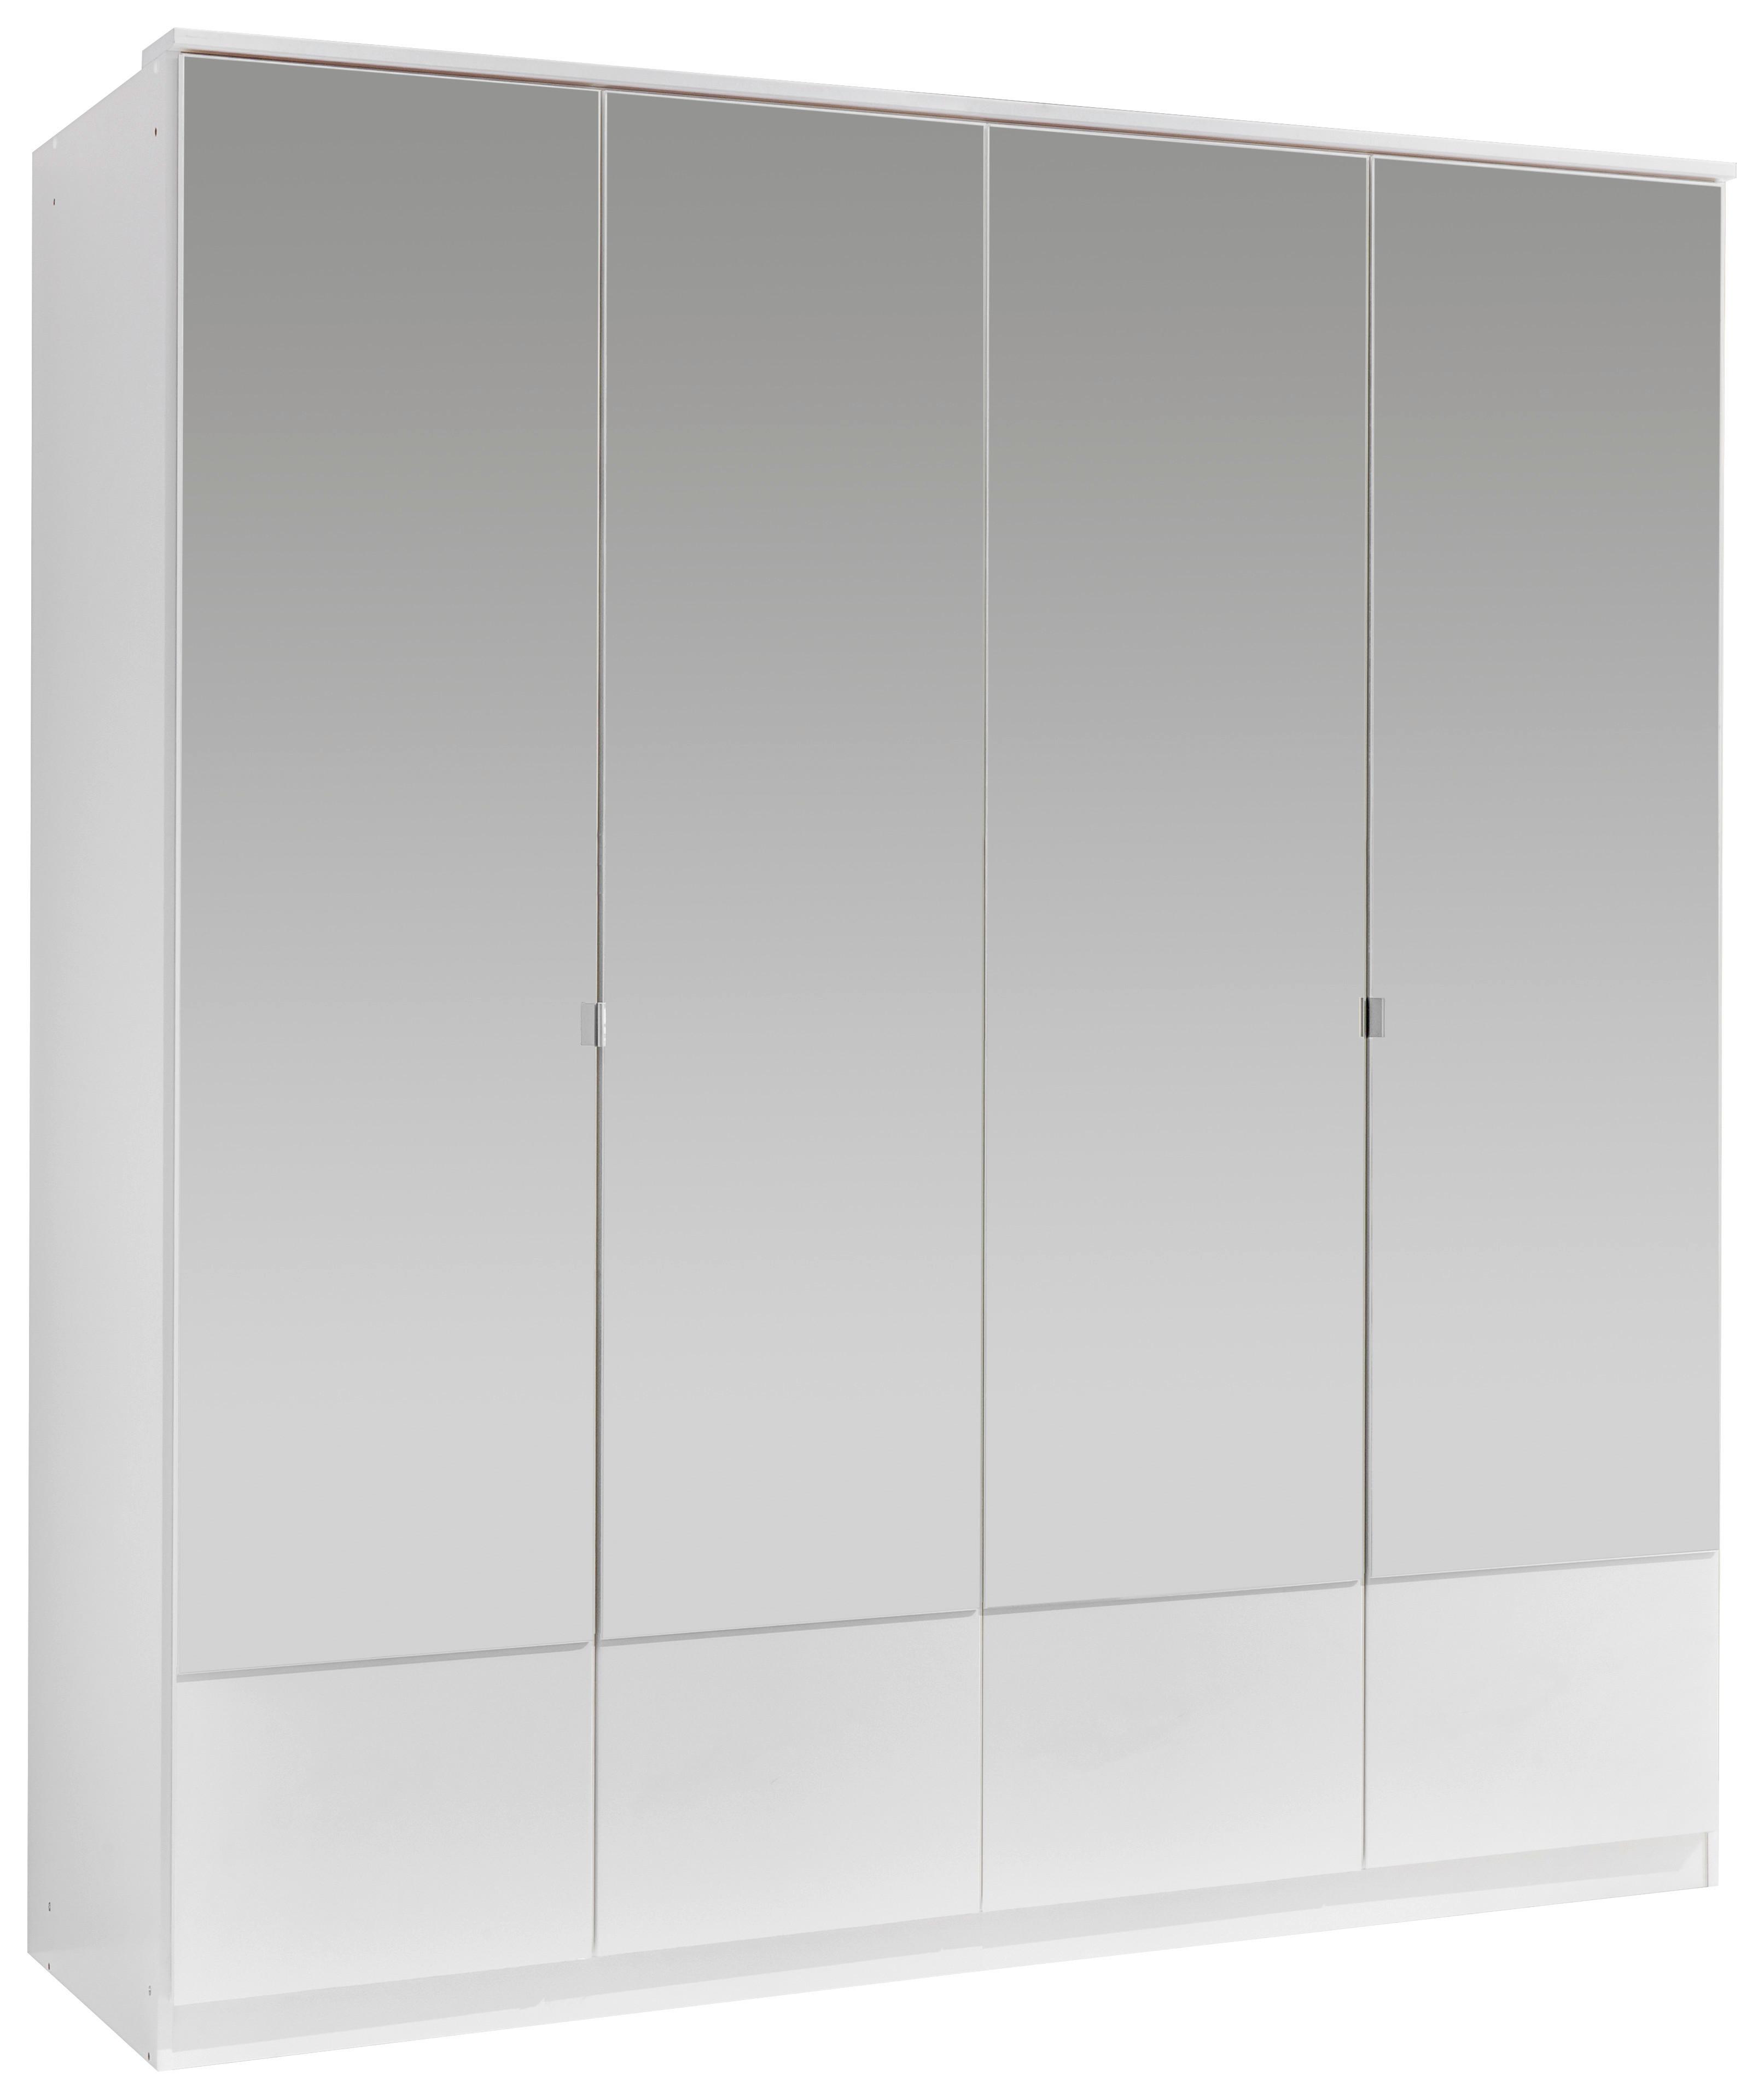 Drehtürenschrank Mit Spiegel 180cm Imago, Weiß - Weiß, KONVENTIONELL, Glas/Holzwerkstoff (180/199/58cm) - MID.YOU